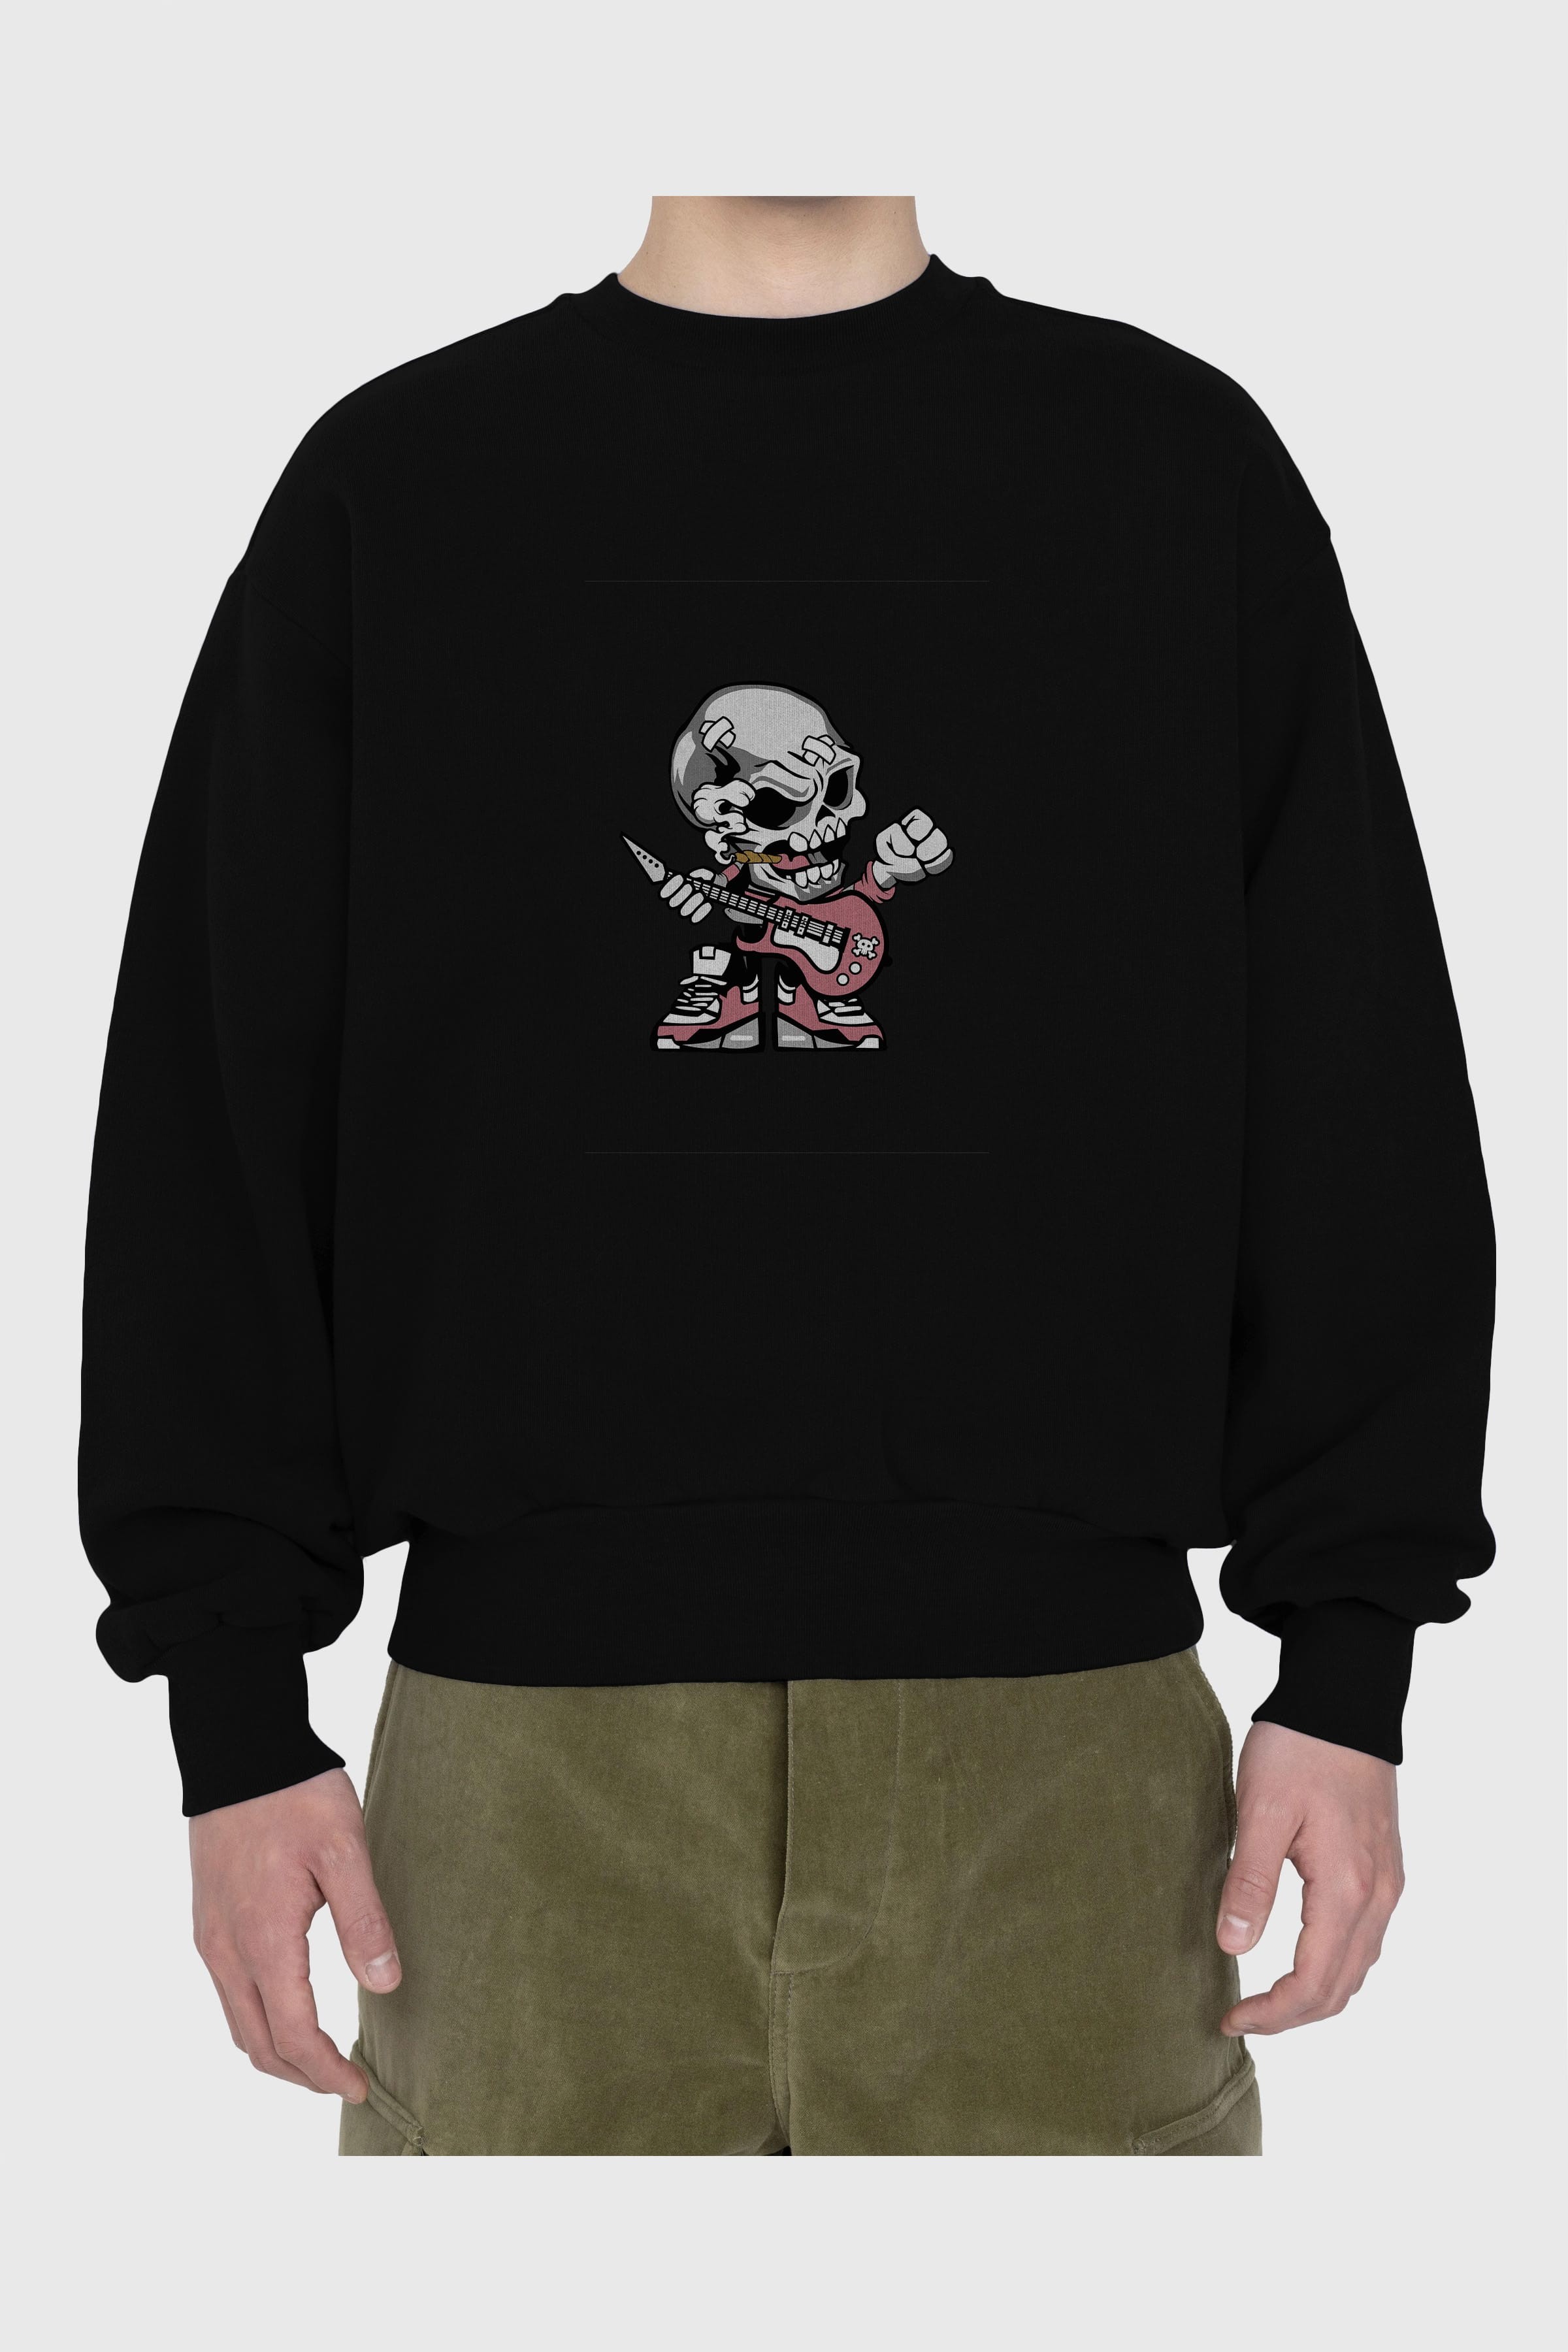 Skull Rockstar Ön Baskılı Oversize Sweatshirt Erkek Kadın Unisex